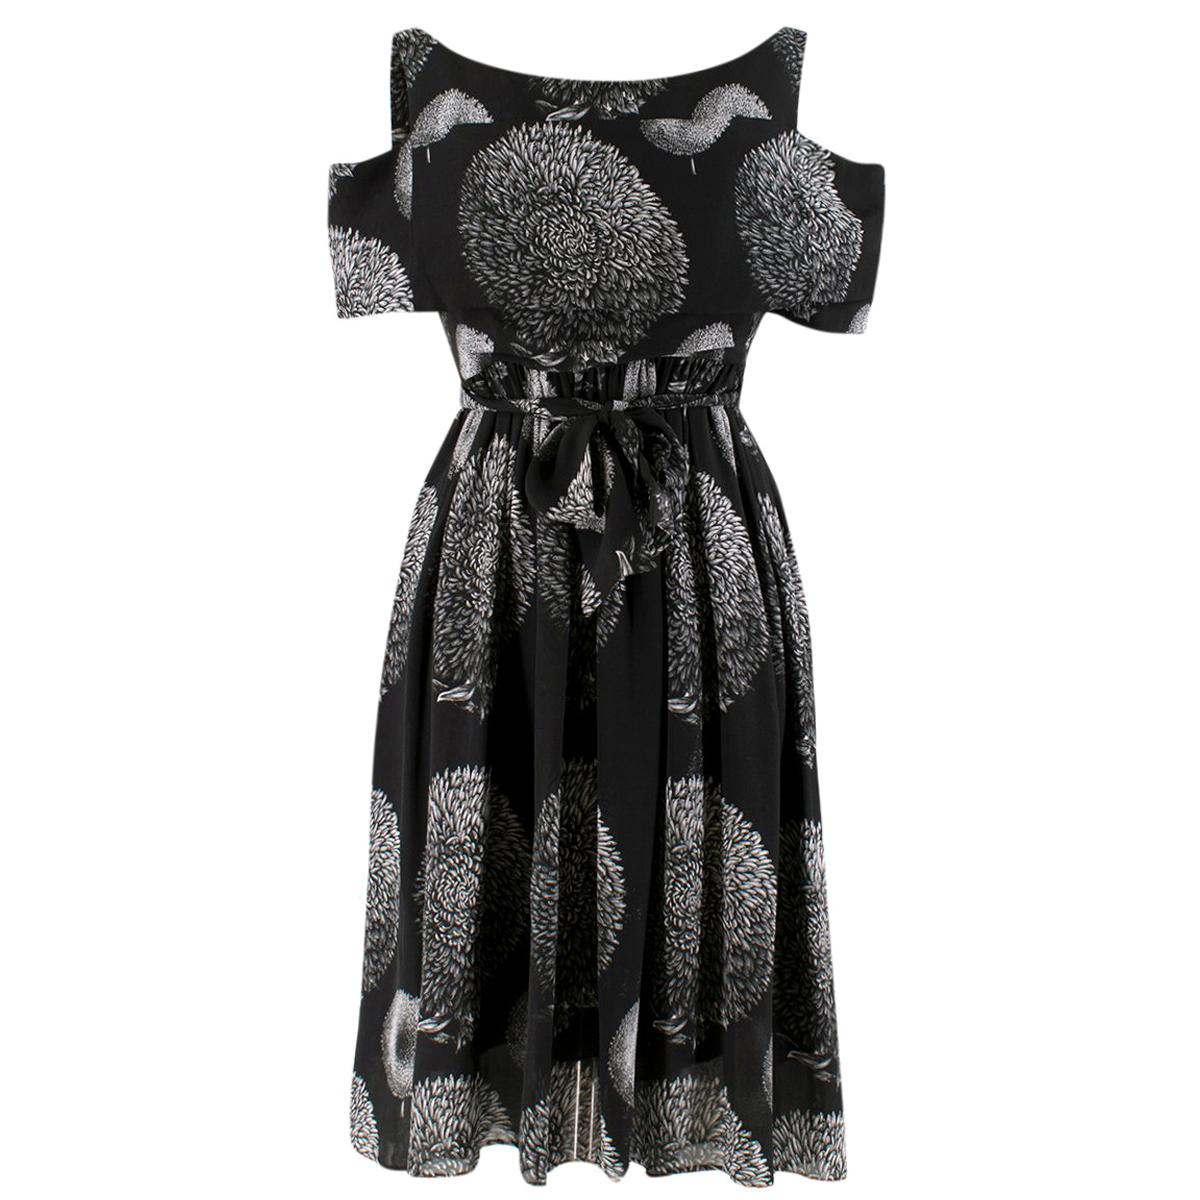 Erdem Black Cold-shoulder Printed Belted Dress - Size US 8